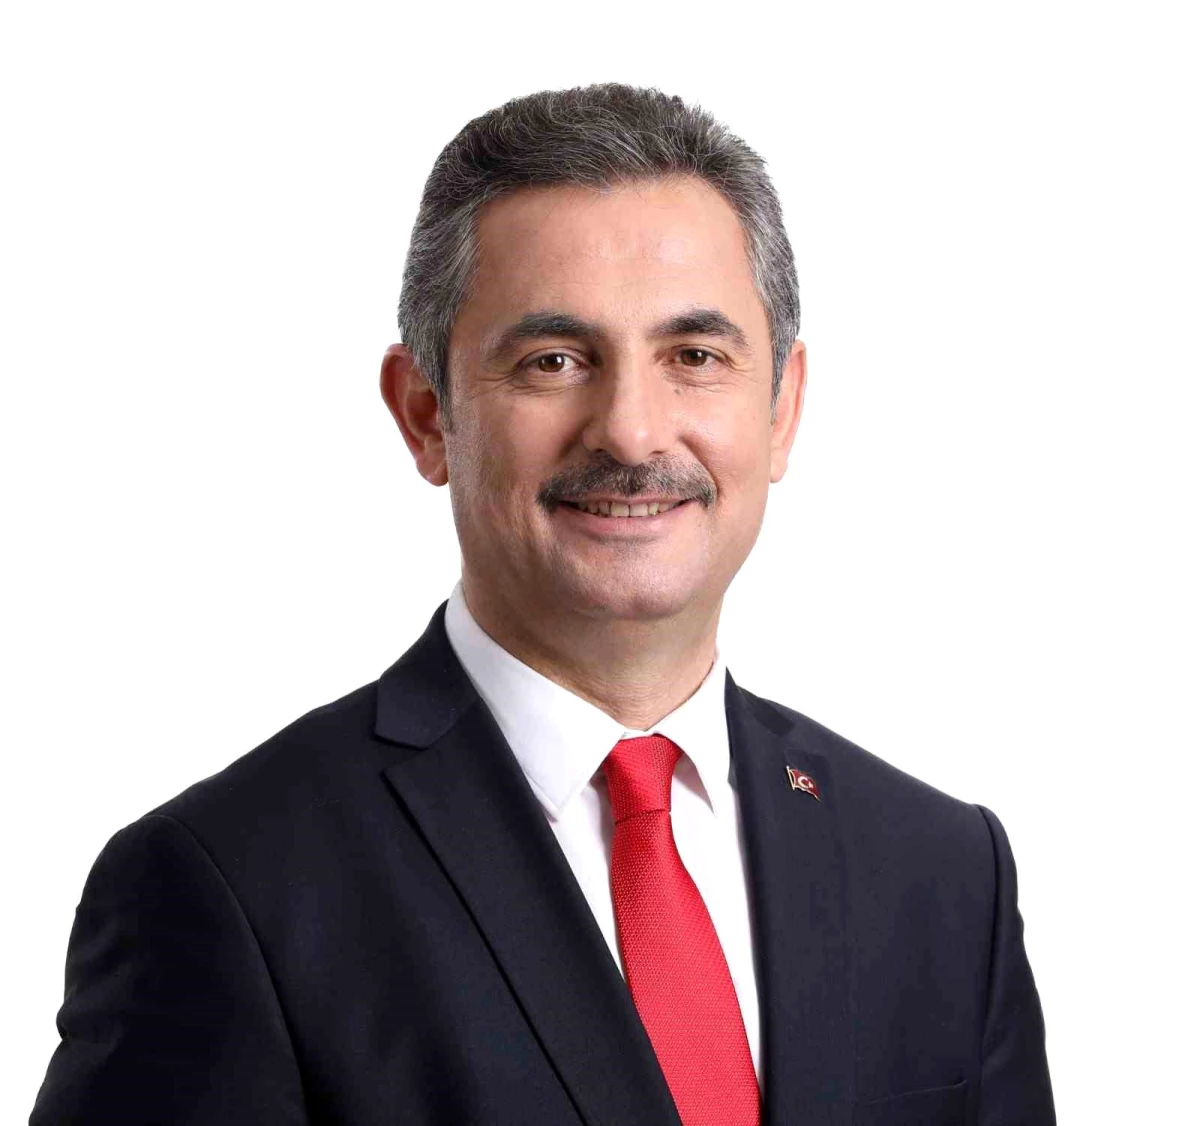 Mamak Belediye Başkanı Köse: "Şehit düşen ecdadımızı rahmetle anıyorum"